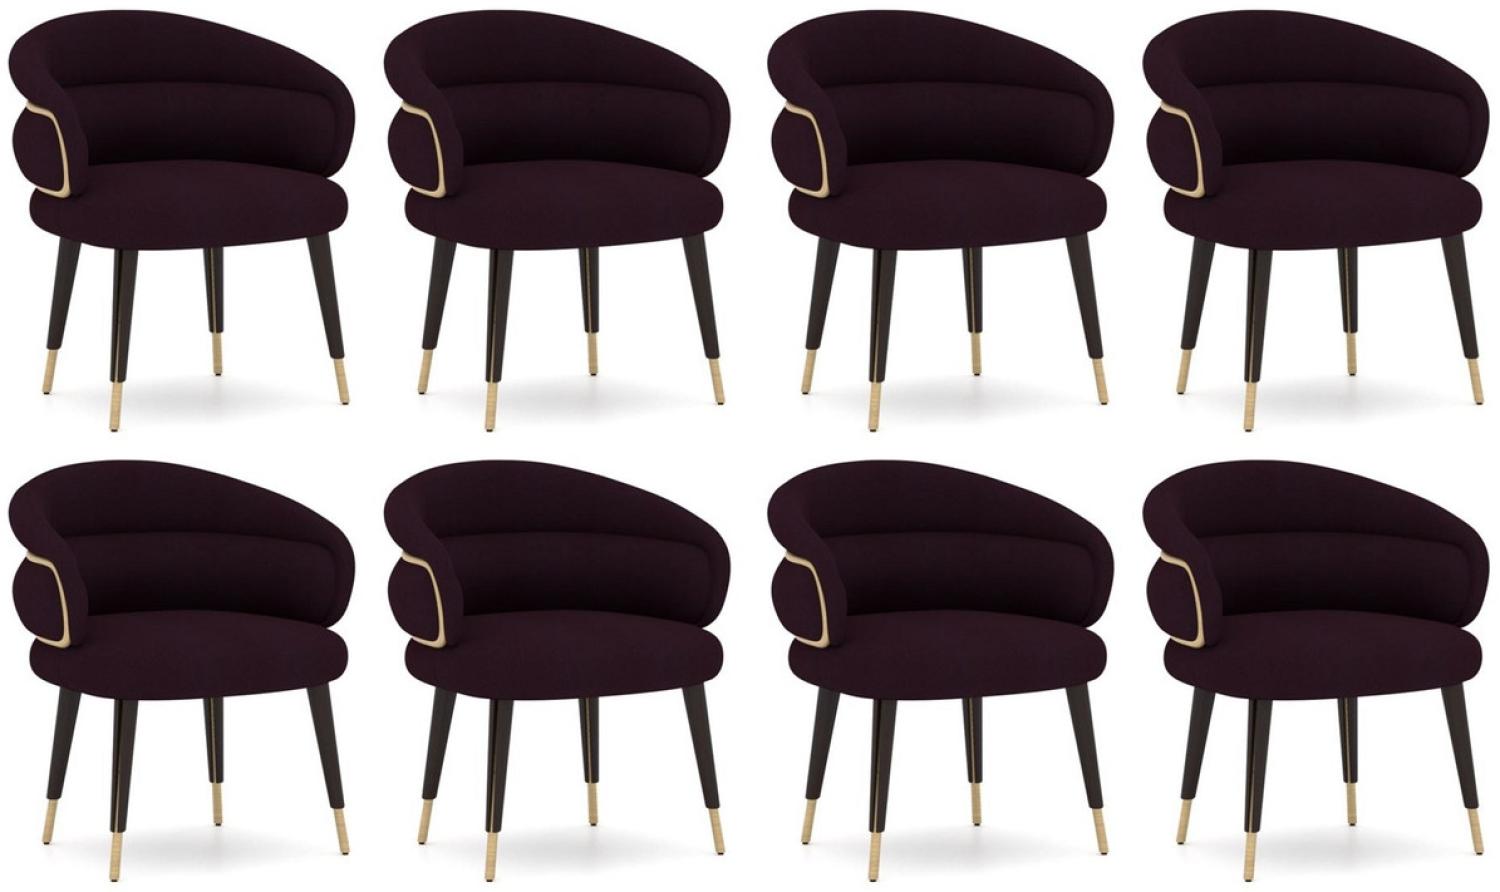 Casa Padrino Luxus Esszimmer Stuhl 8er Set Lila / Schwarz / Beige - Küchen Stühle mit Armlehnen - Esszimmer Möbel - Restaurant Möbel - Hotel Möbel - Luxus Möbel Bild 1